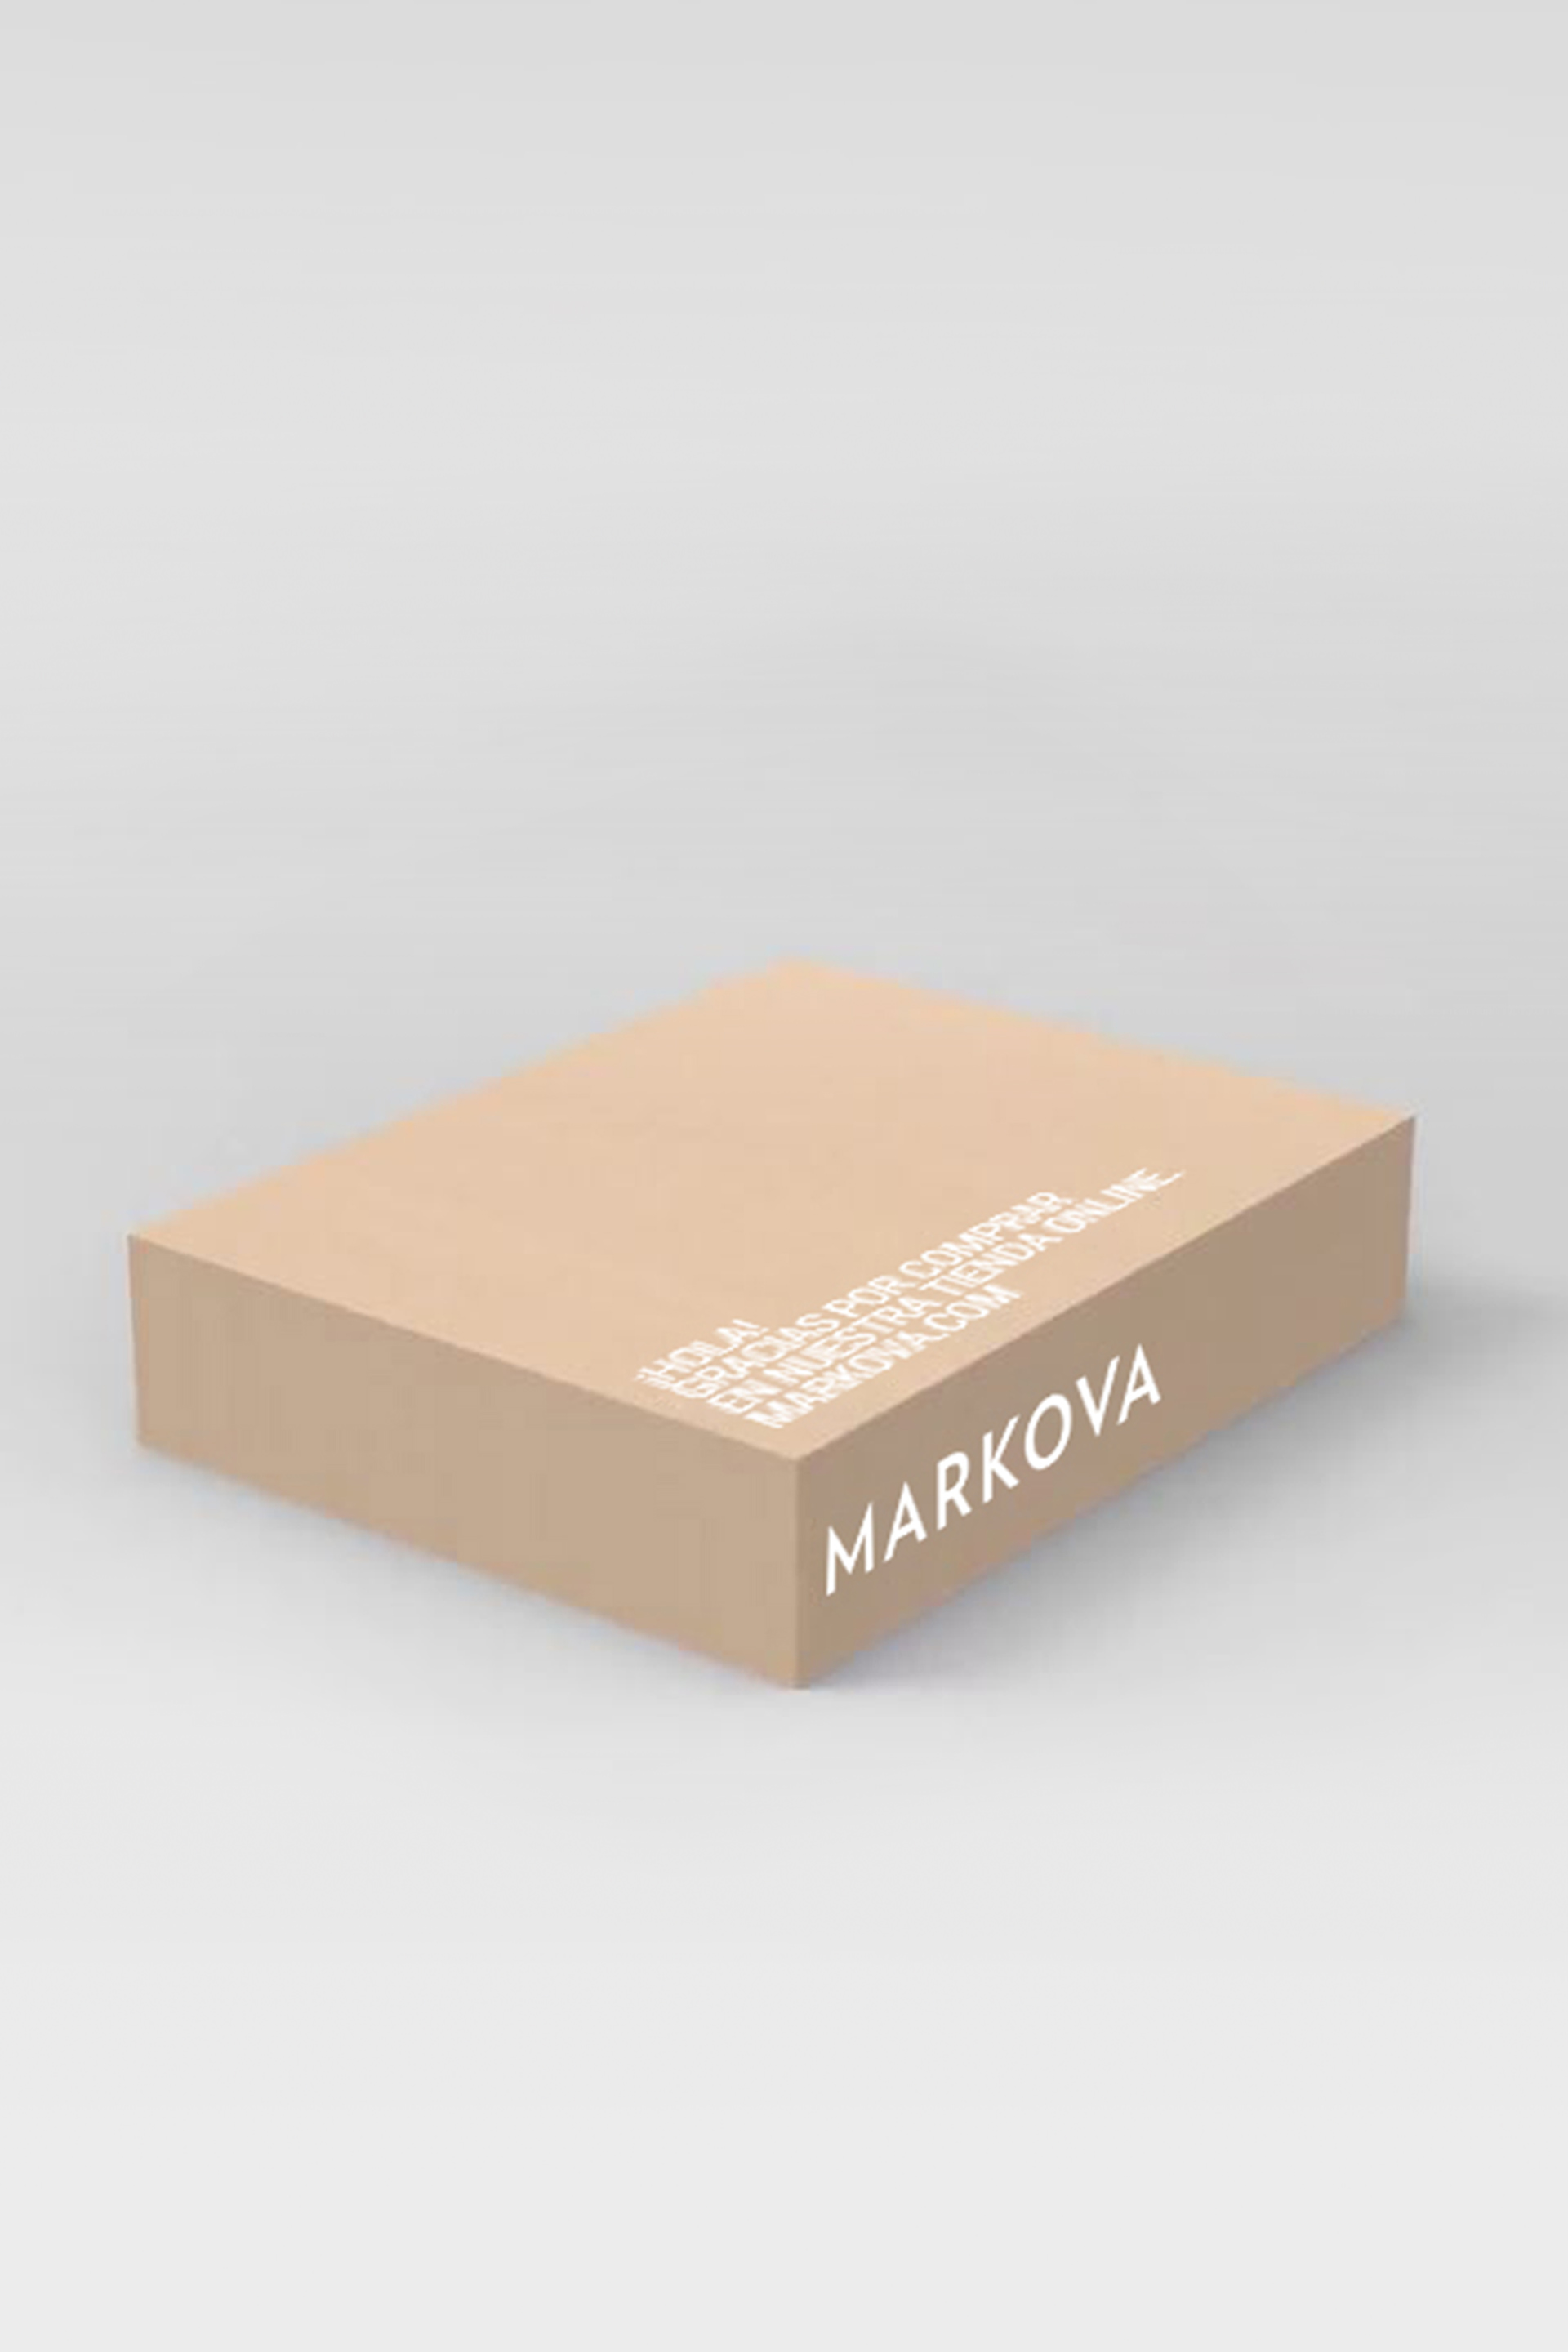 Markova Gift Box